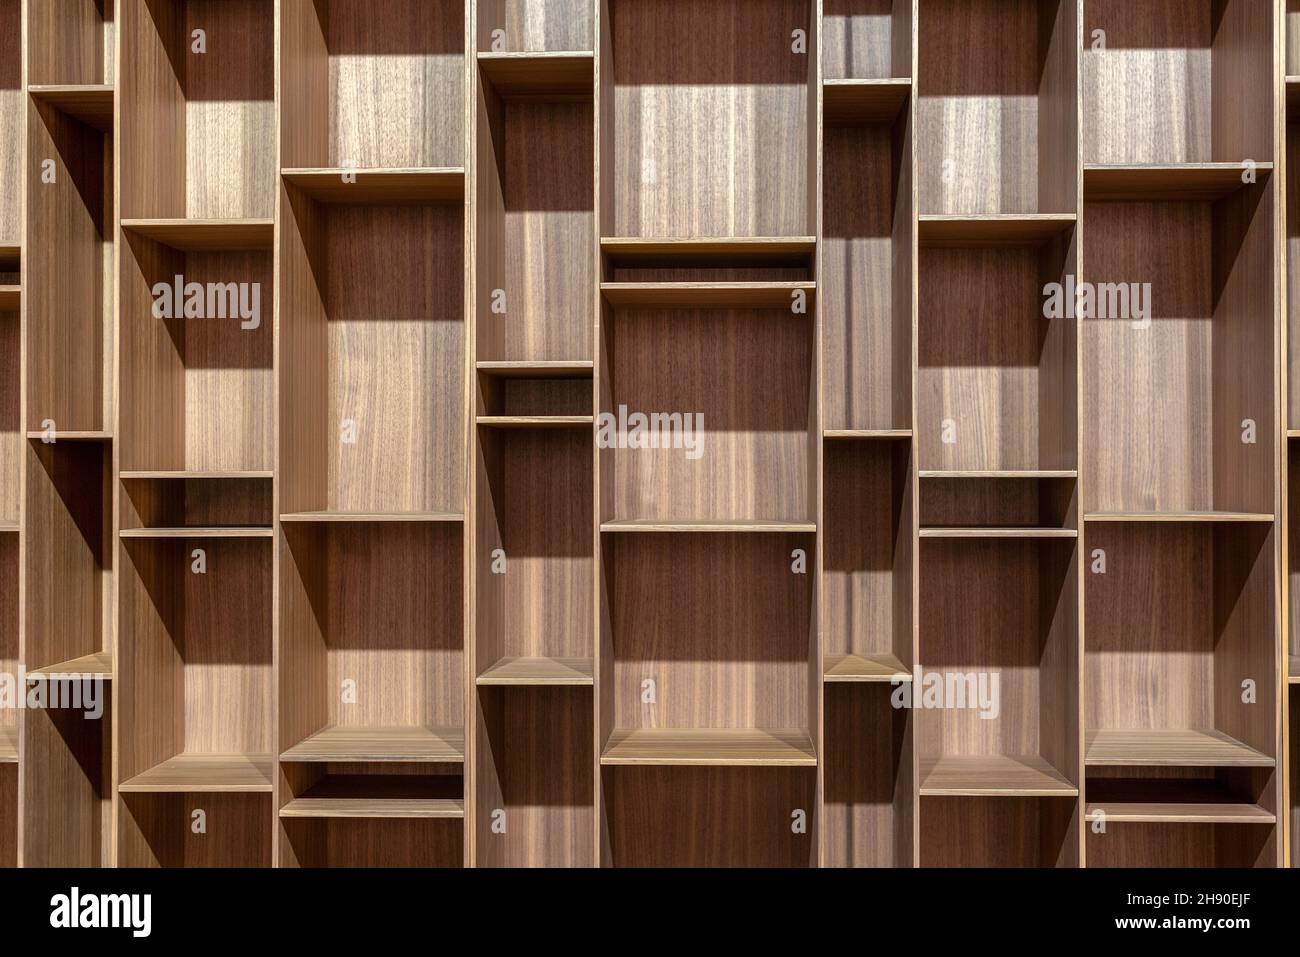 Pleine structure de bibliothèque moderne en bois avec vide géométrique carré et étagères rectangulaires Banque D'Images